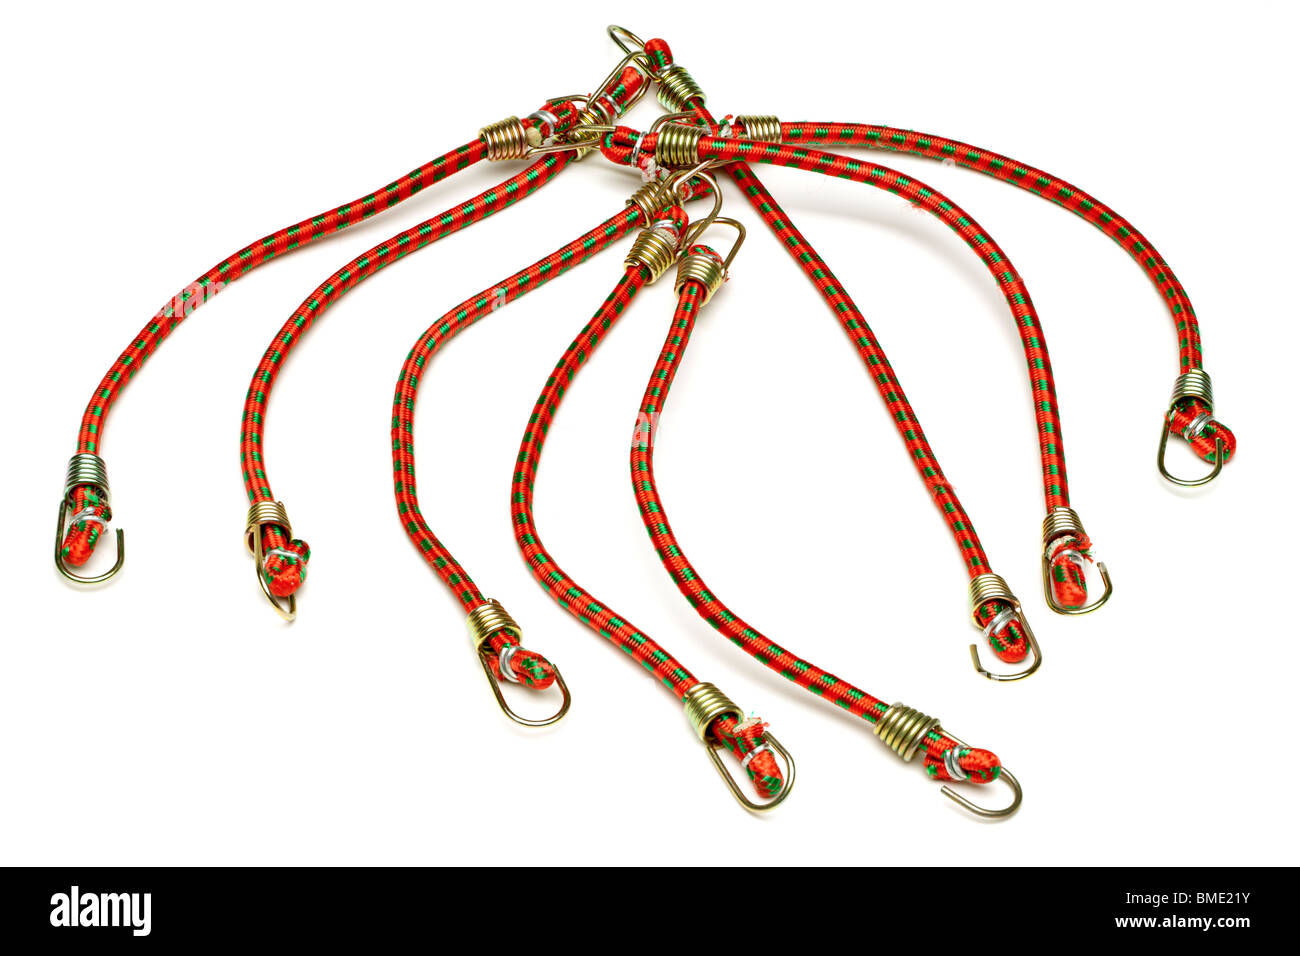 Haufen von elastischen grüne und rote Mini Bungee-Seile Stockfoto